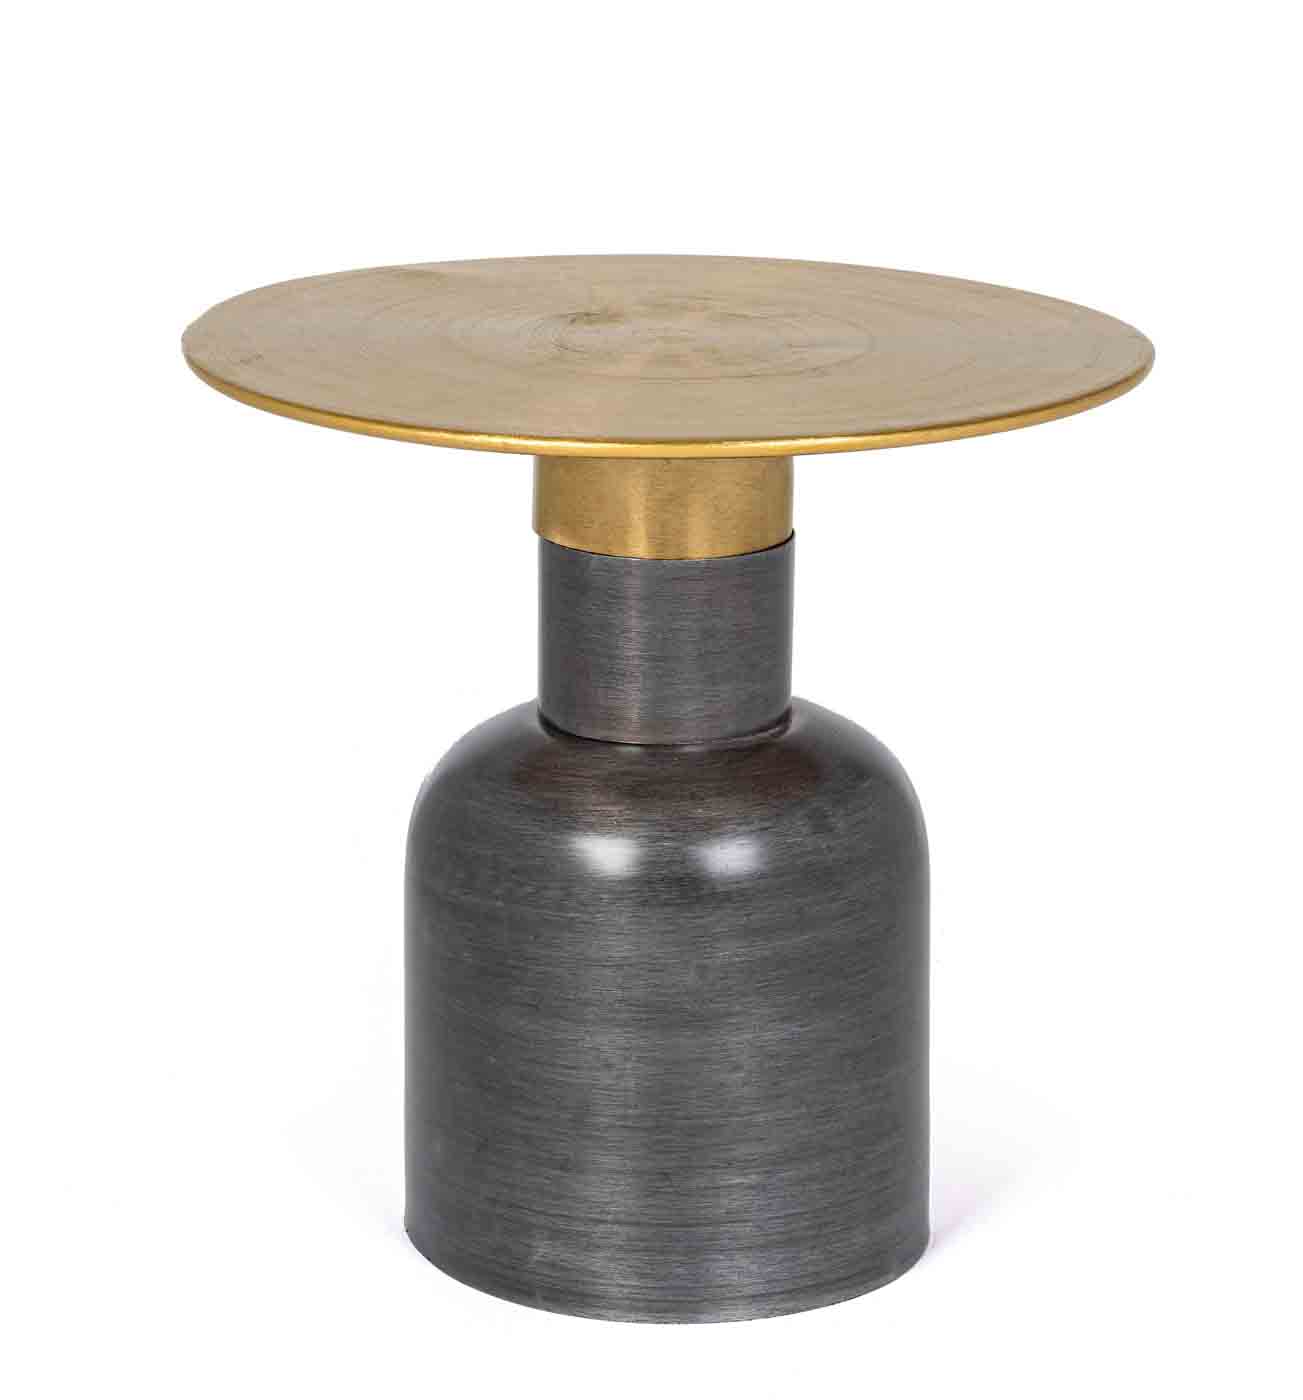 Das Gestell des Beistelltisches Alopa wurde aus Metall gefertigt, welches eine Feinbearbeitung aus Messing erhalten hat. Die Tischplatte ist vergoldet und unterstreicht das moderne Design des Tisches.